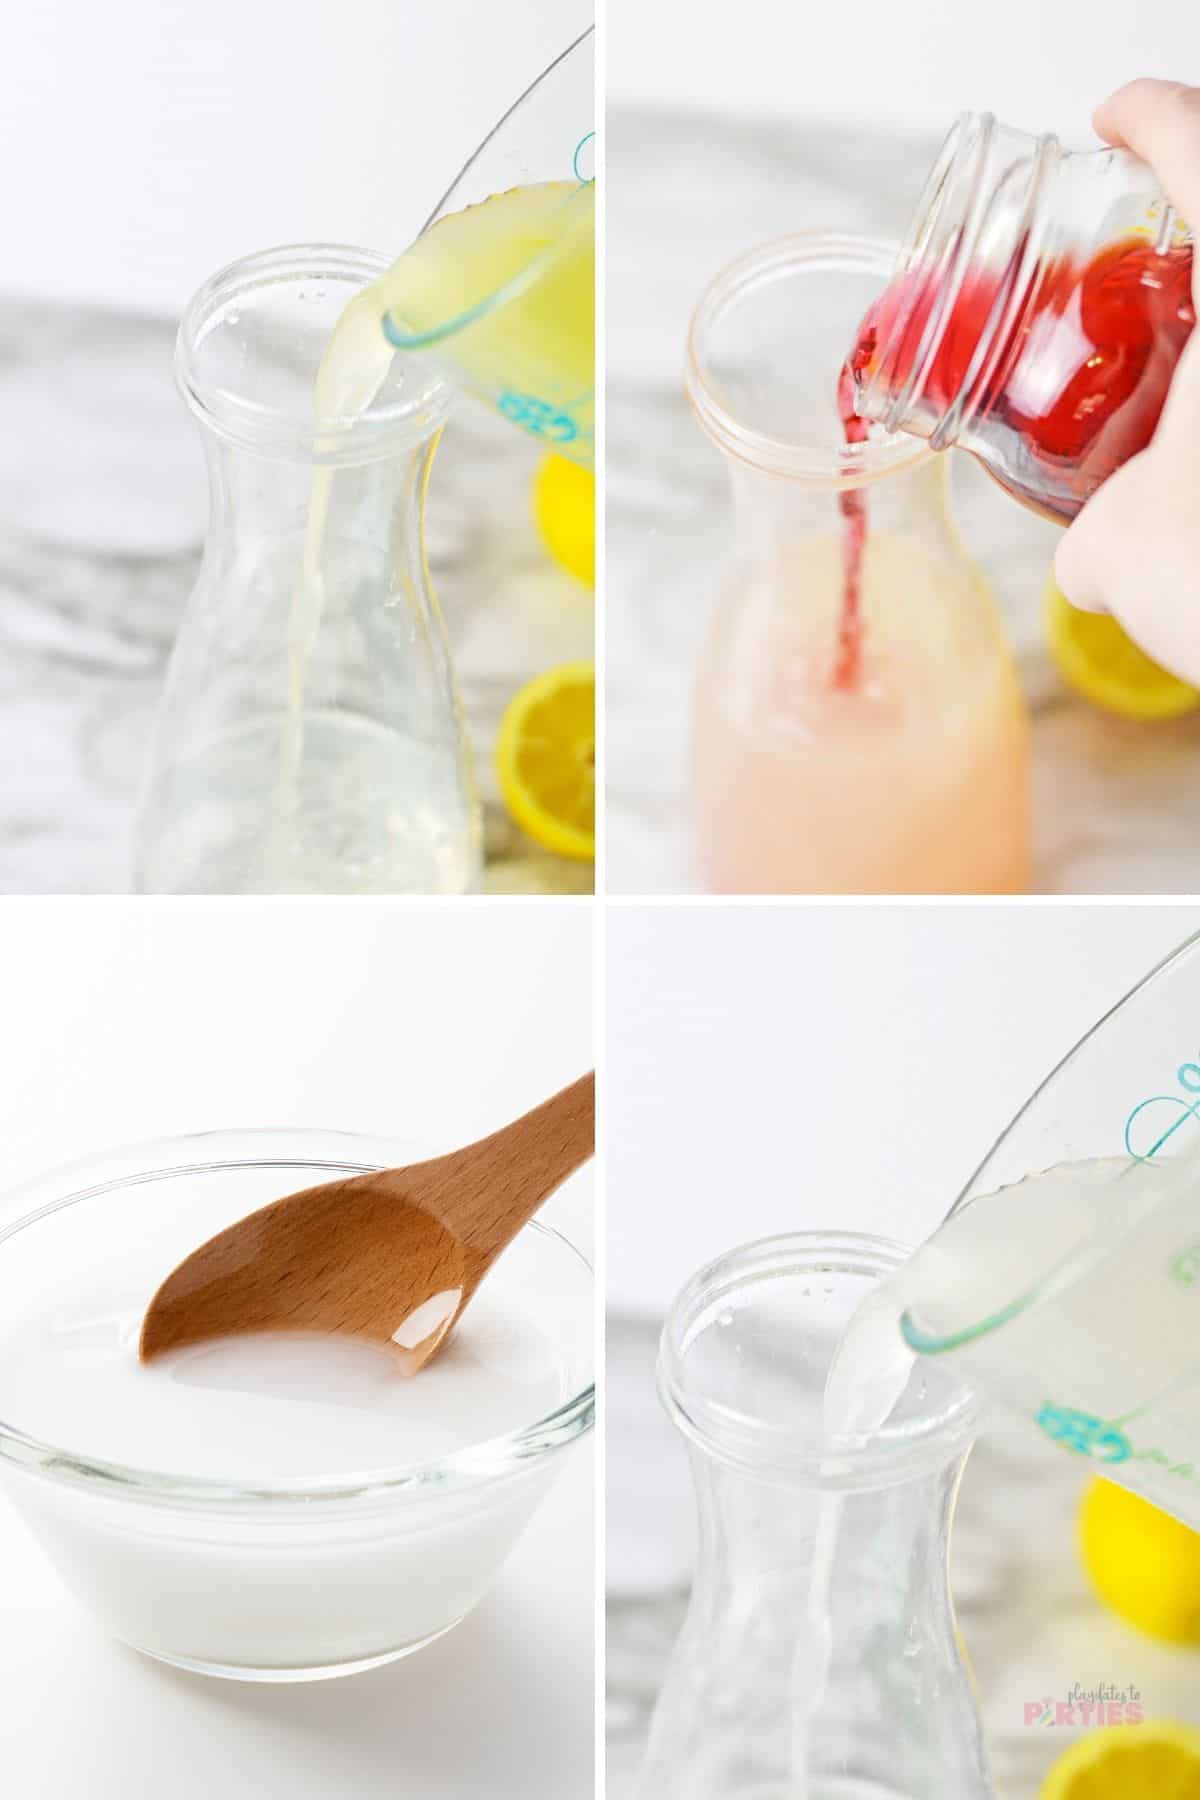 How to Make pink lemonade steps 1 through 4.